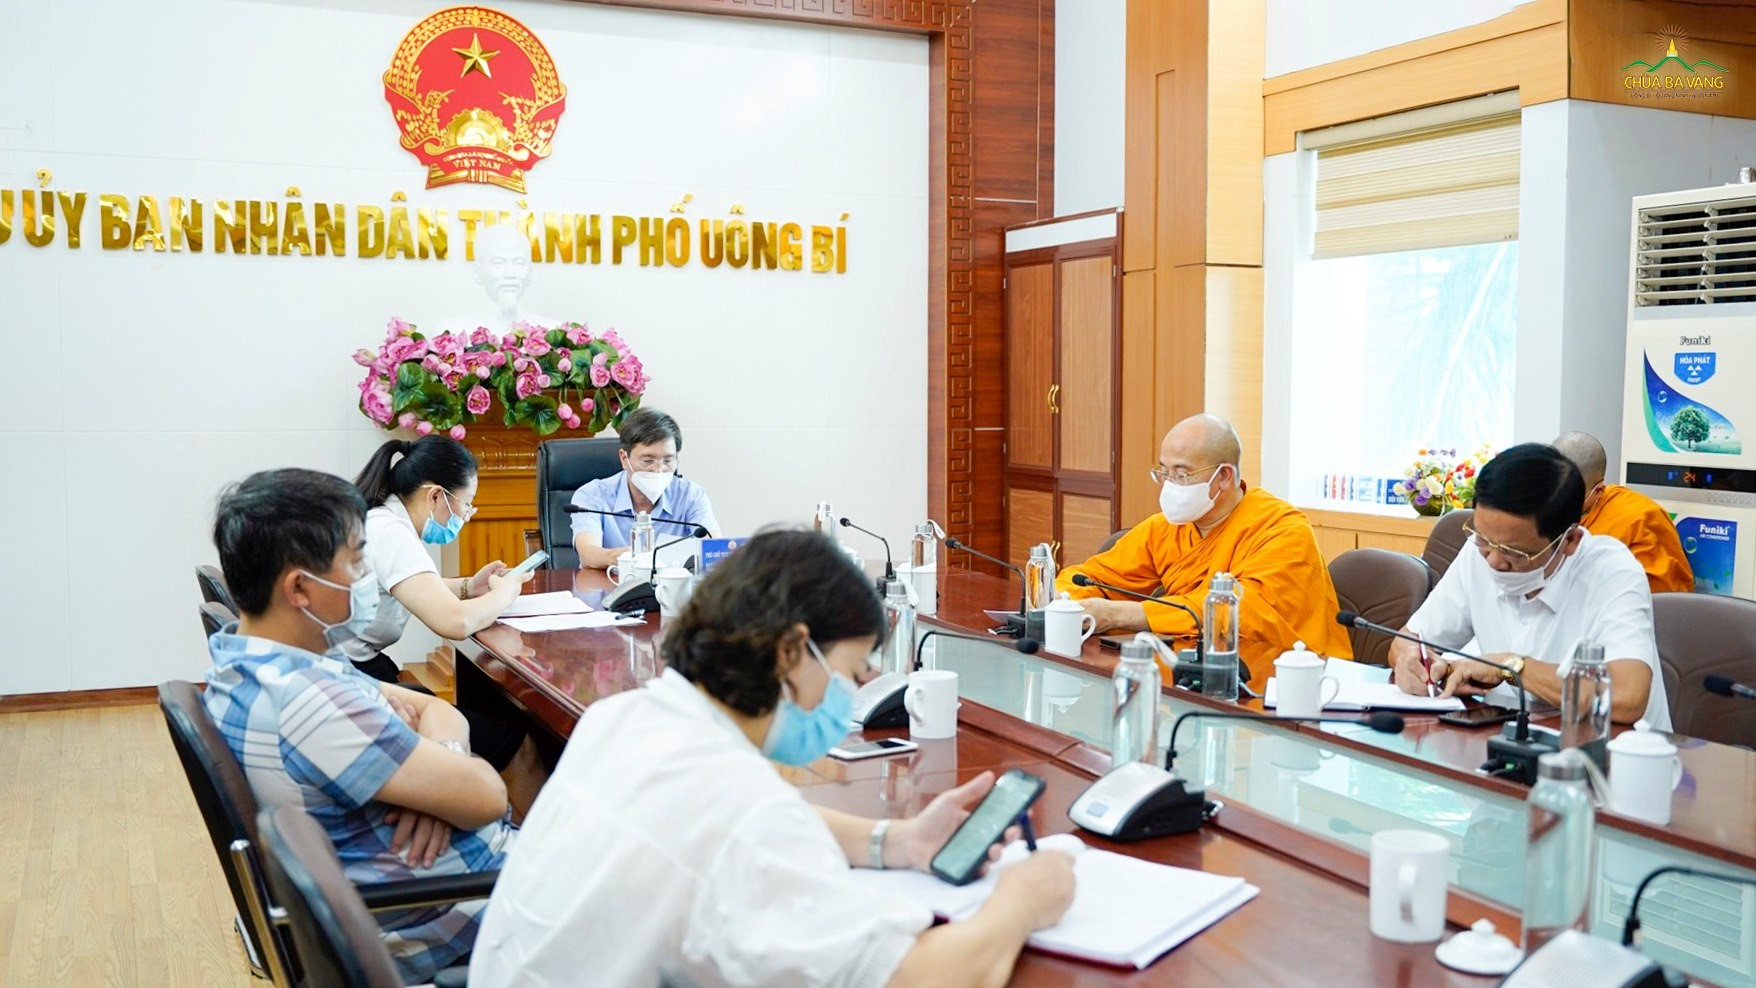 Sư Phụ Thích Trúc Thái Minh đã tham dự buổi họp trực tuyến với UBND tỉnh Quảng Ninh về báo cáo công tác đảm bảo an toàn phòng chống dịch gắn với việc mở lại các cơ sở kinh doanh dịch vụ, du lịch và các giải pháp thúc đẩy an toàn trên địa bàn tỉnh.